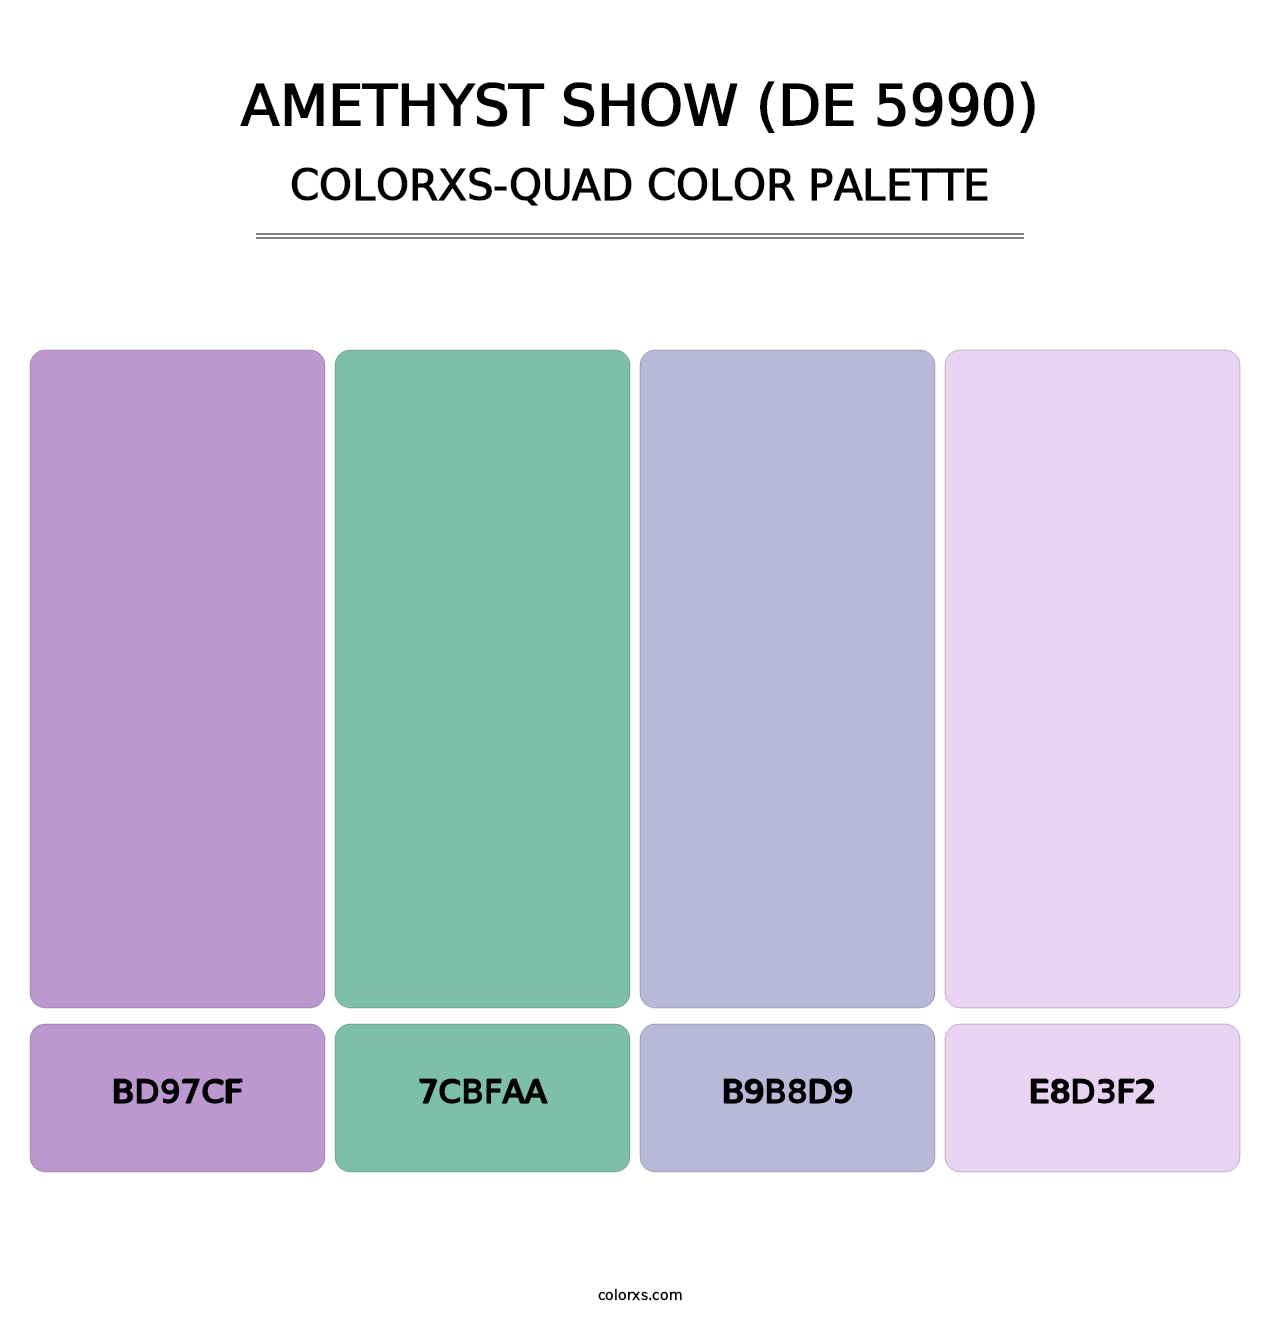 Amethyst Show (DE 5990) - Colorxs Quad Palette